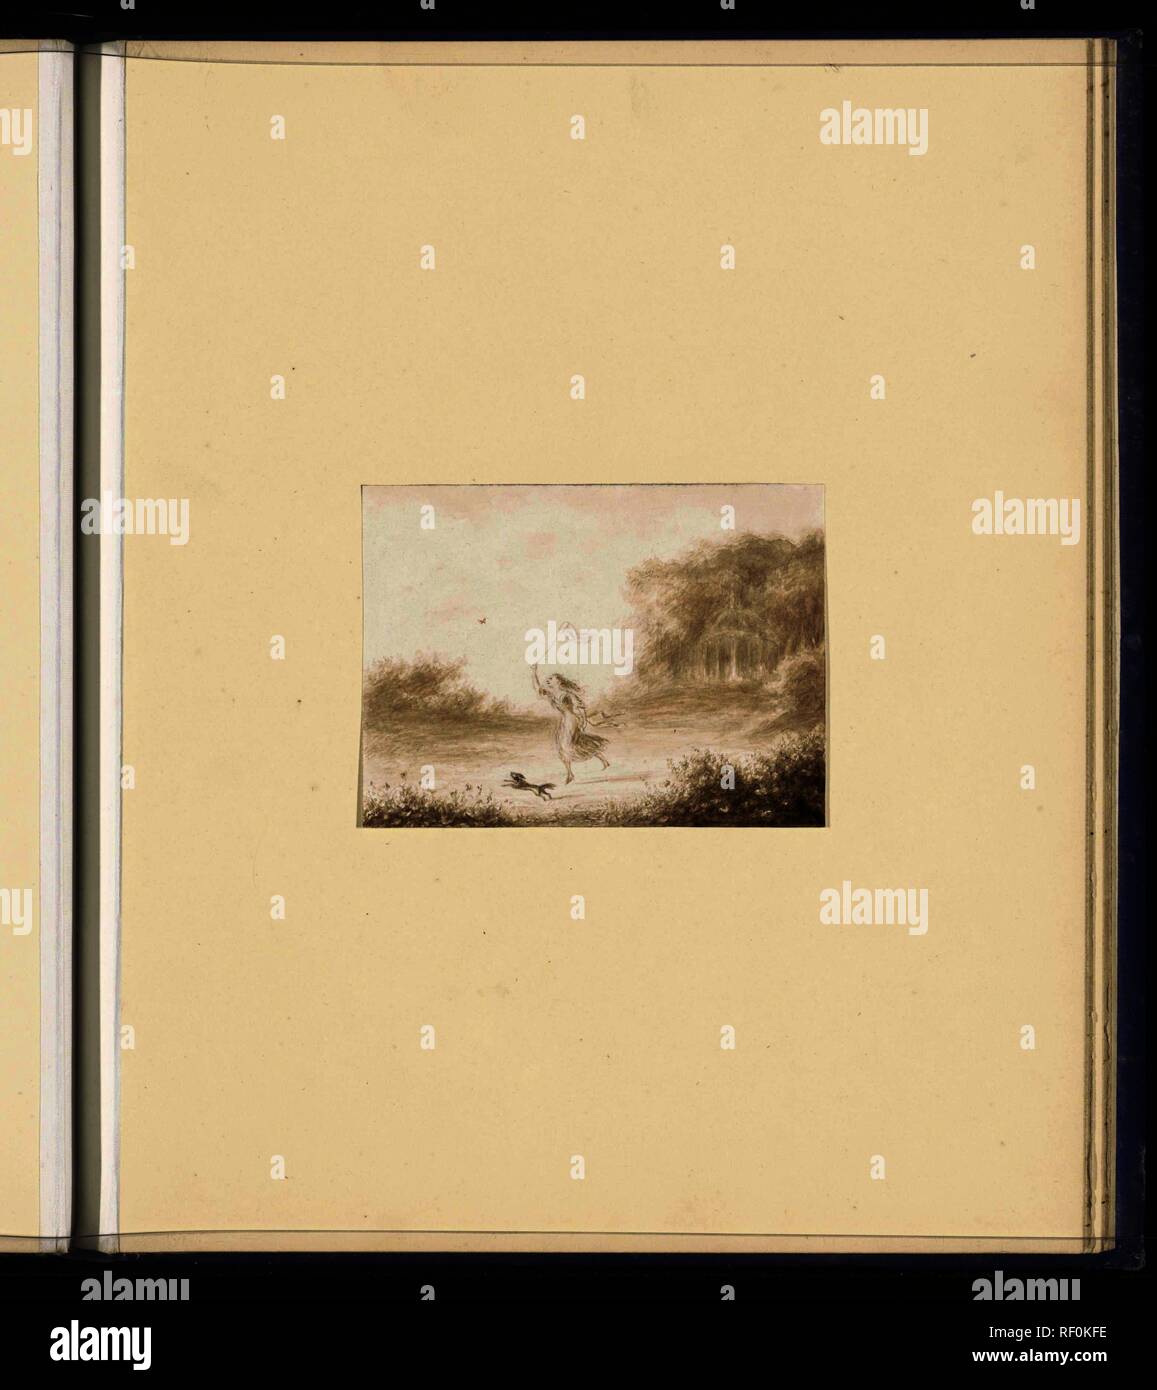 Paesaggio con ragazza cattura le farfalle. Relatore per parere: Alexander Huell Ver. Dating: 1882. Misurazioni: h 79 mm × W 106 mm. Museo: Rijksmuseum Amsterdam. Foto Stock